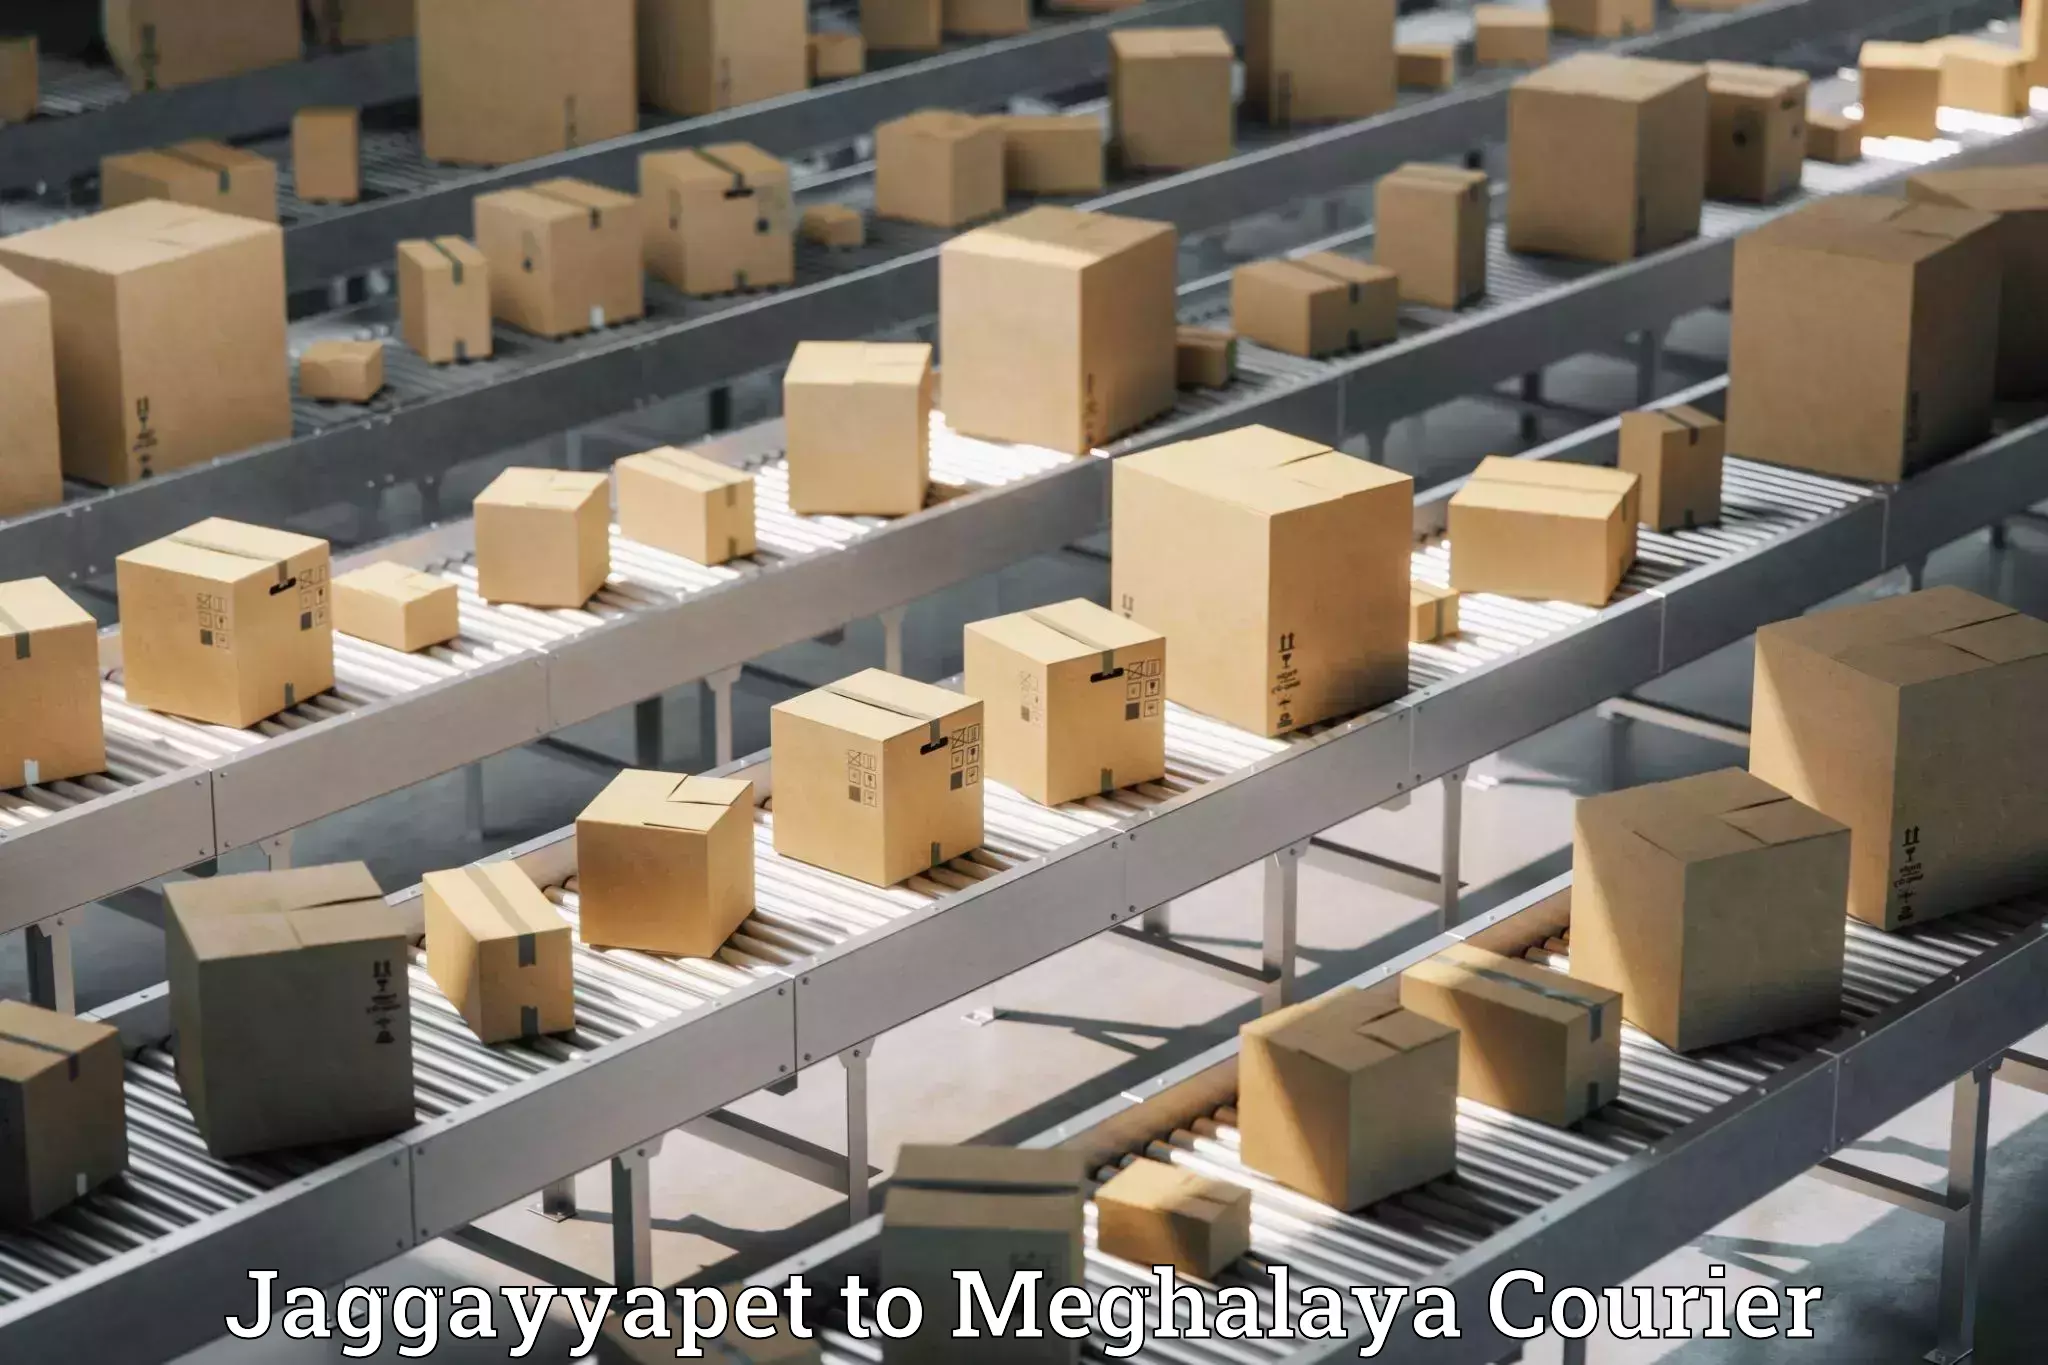 Express shipping Jaggayyapet to Meghalaya